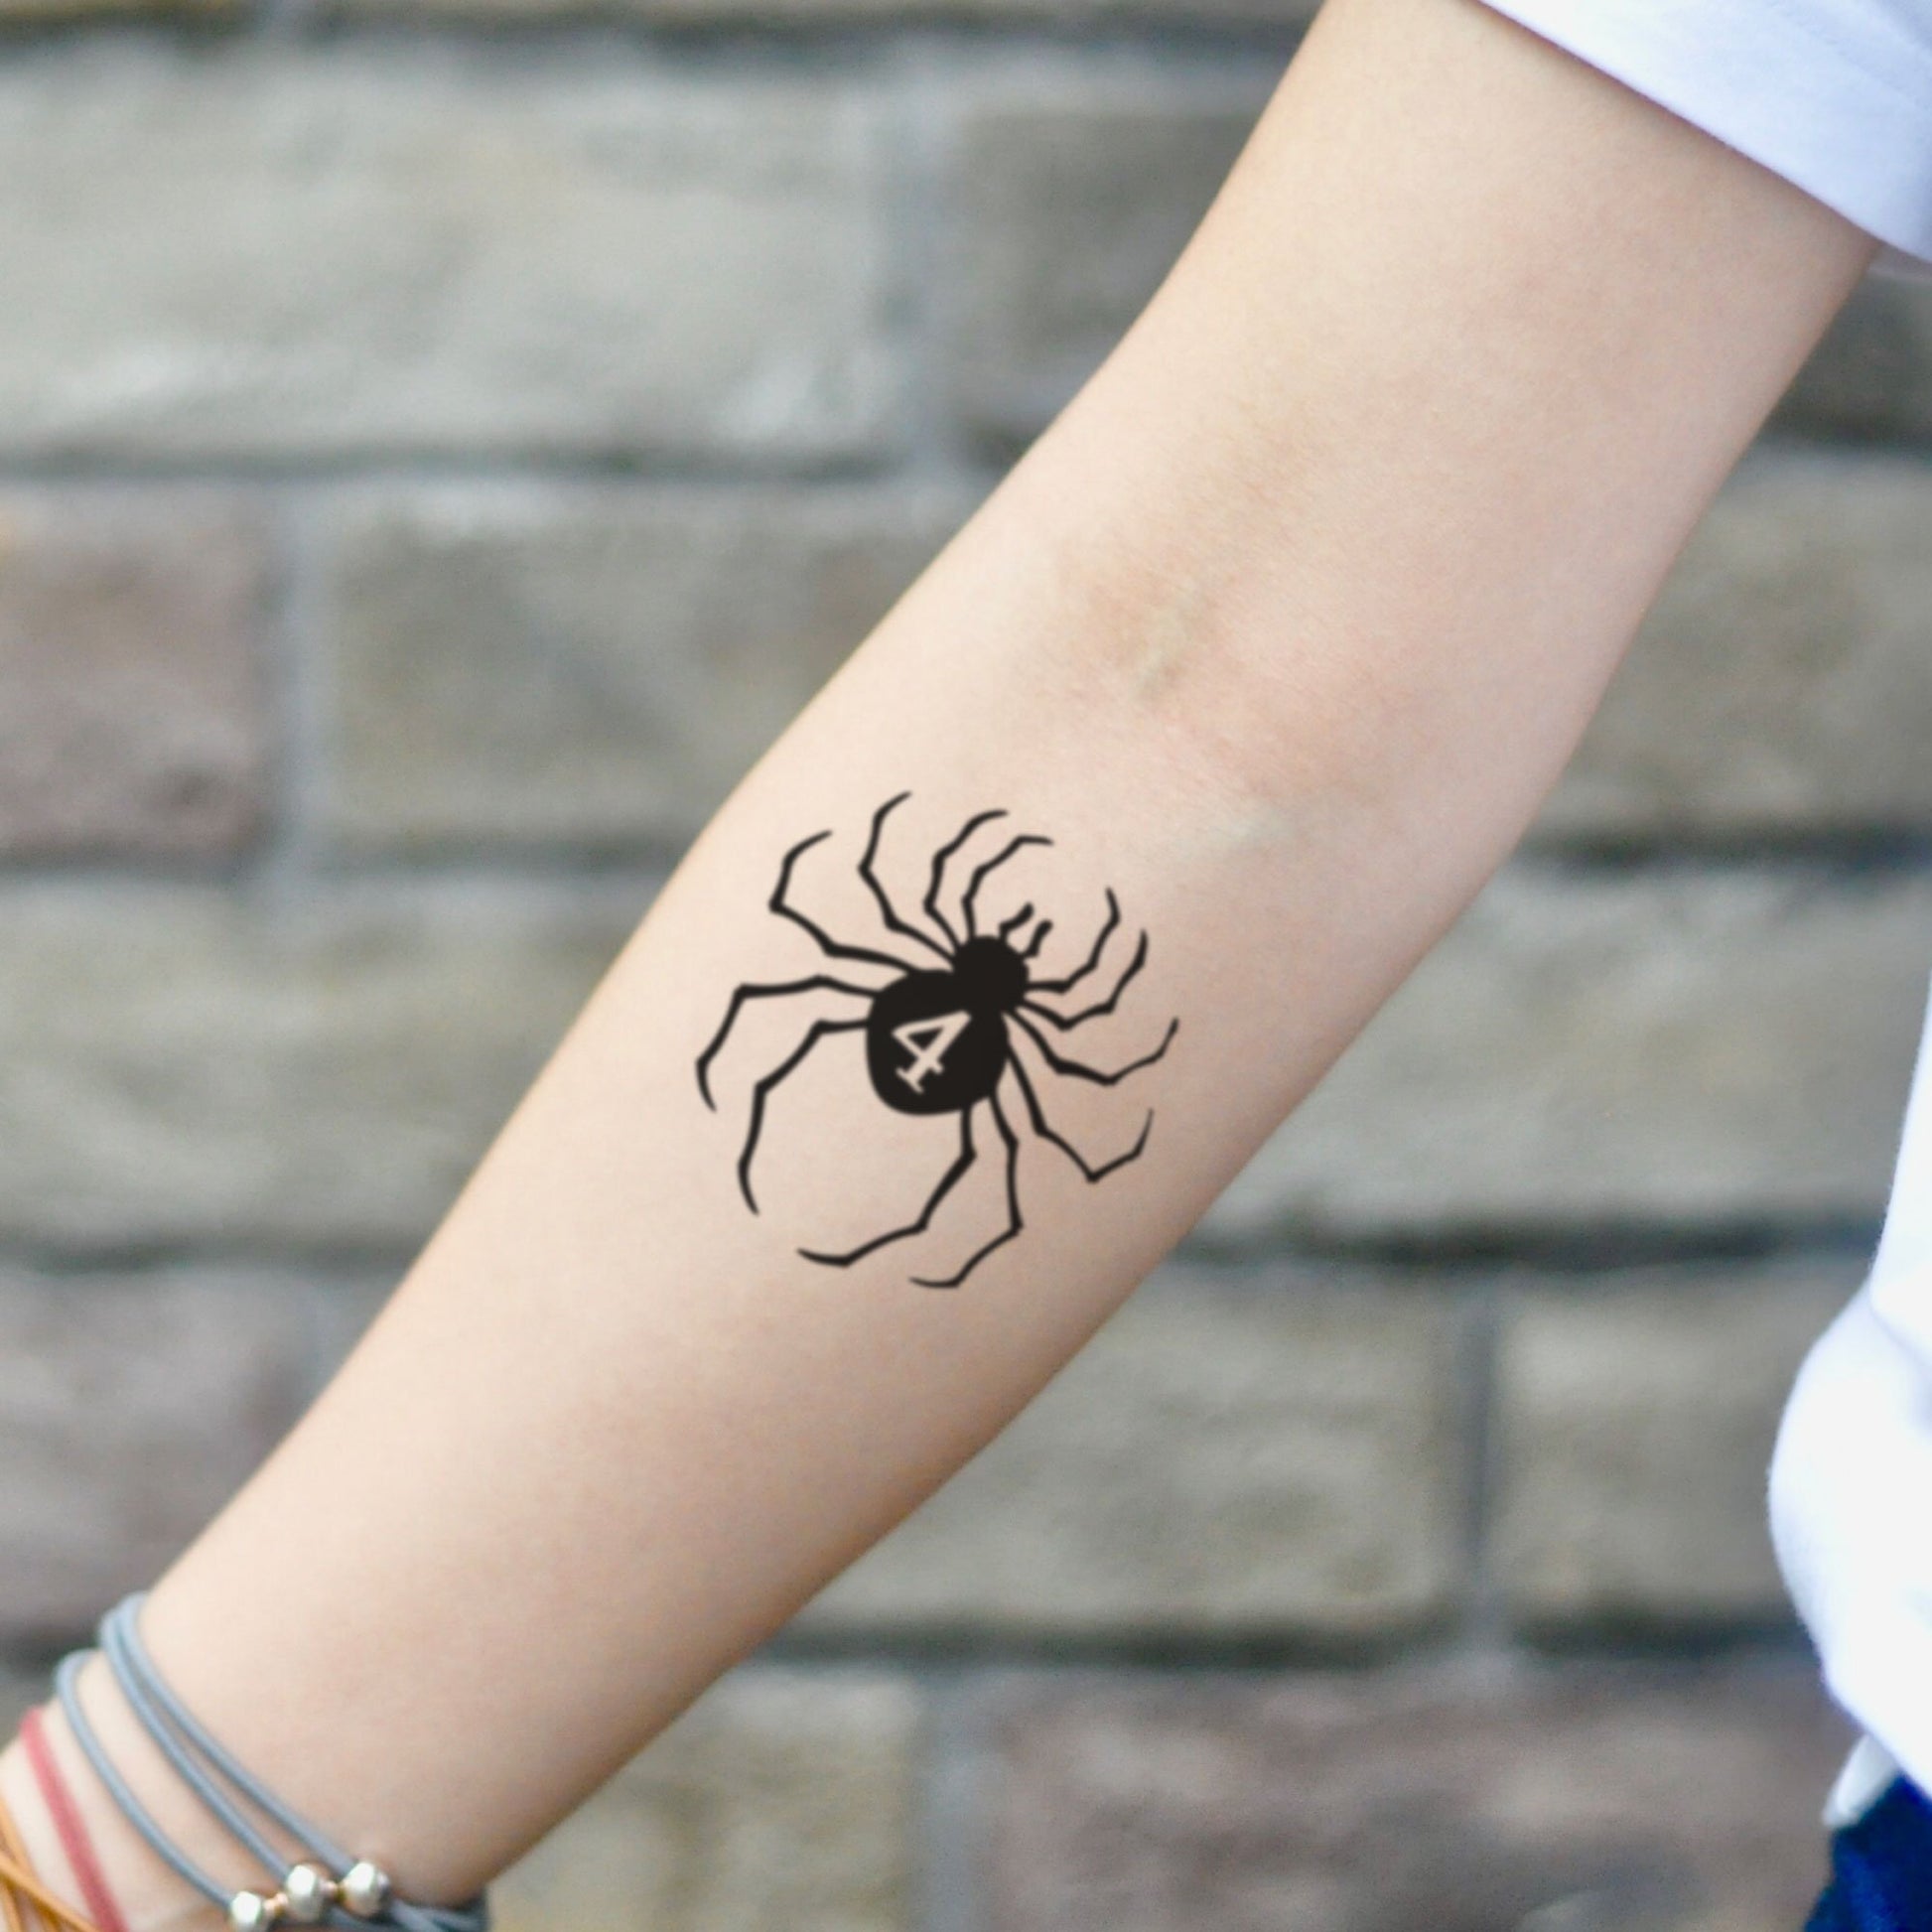 Hunter x Hunter Hisoka Spider Temporary Tattoo Sticker - OhMyTat